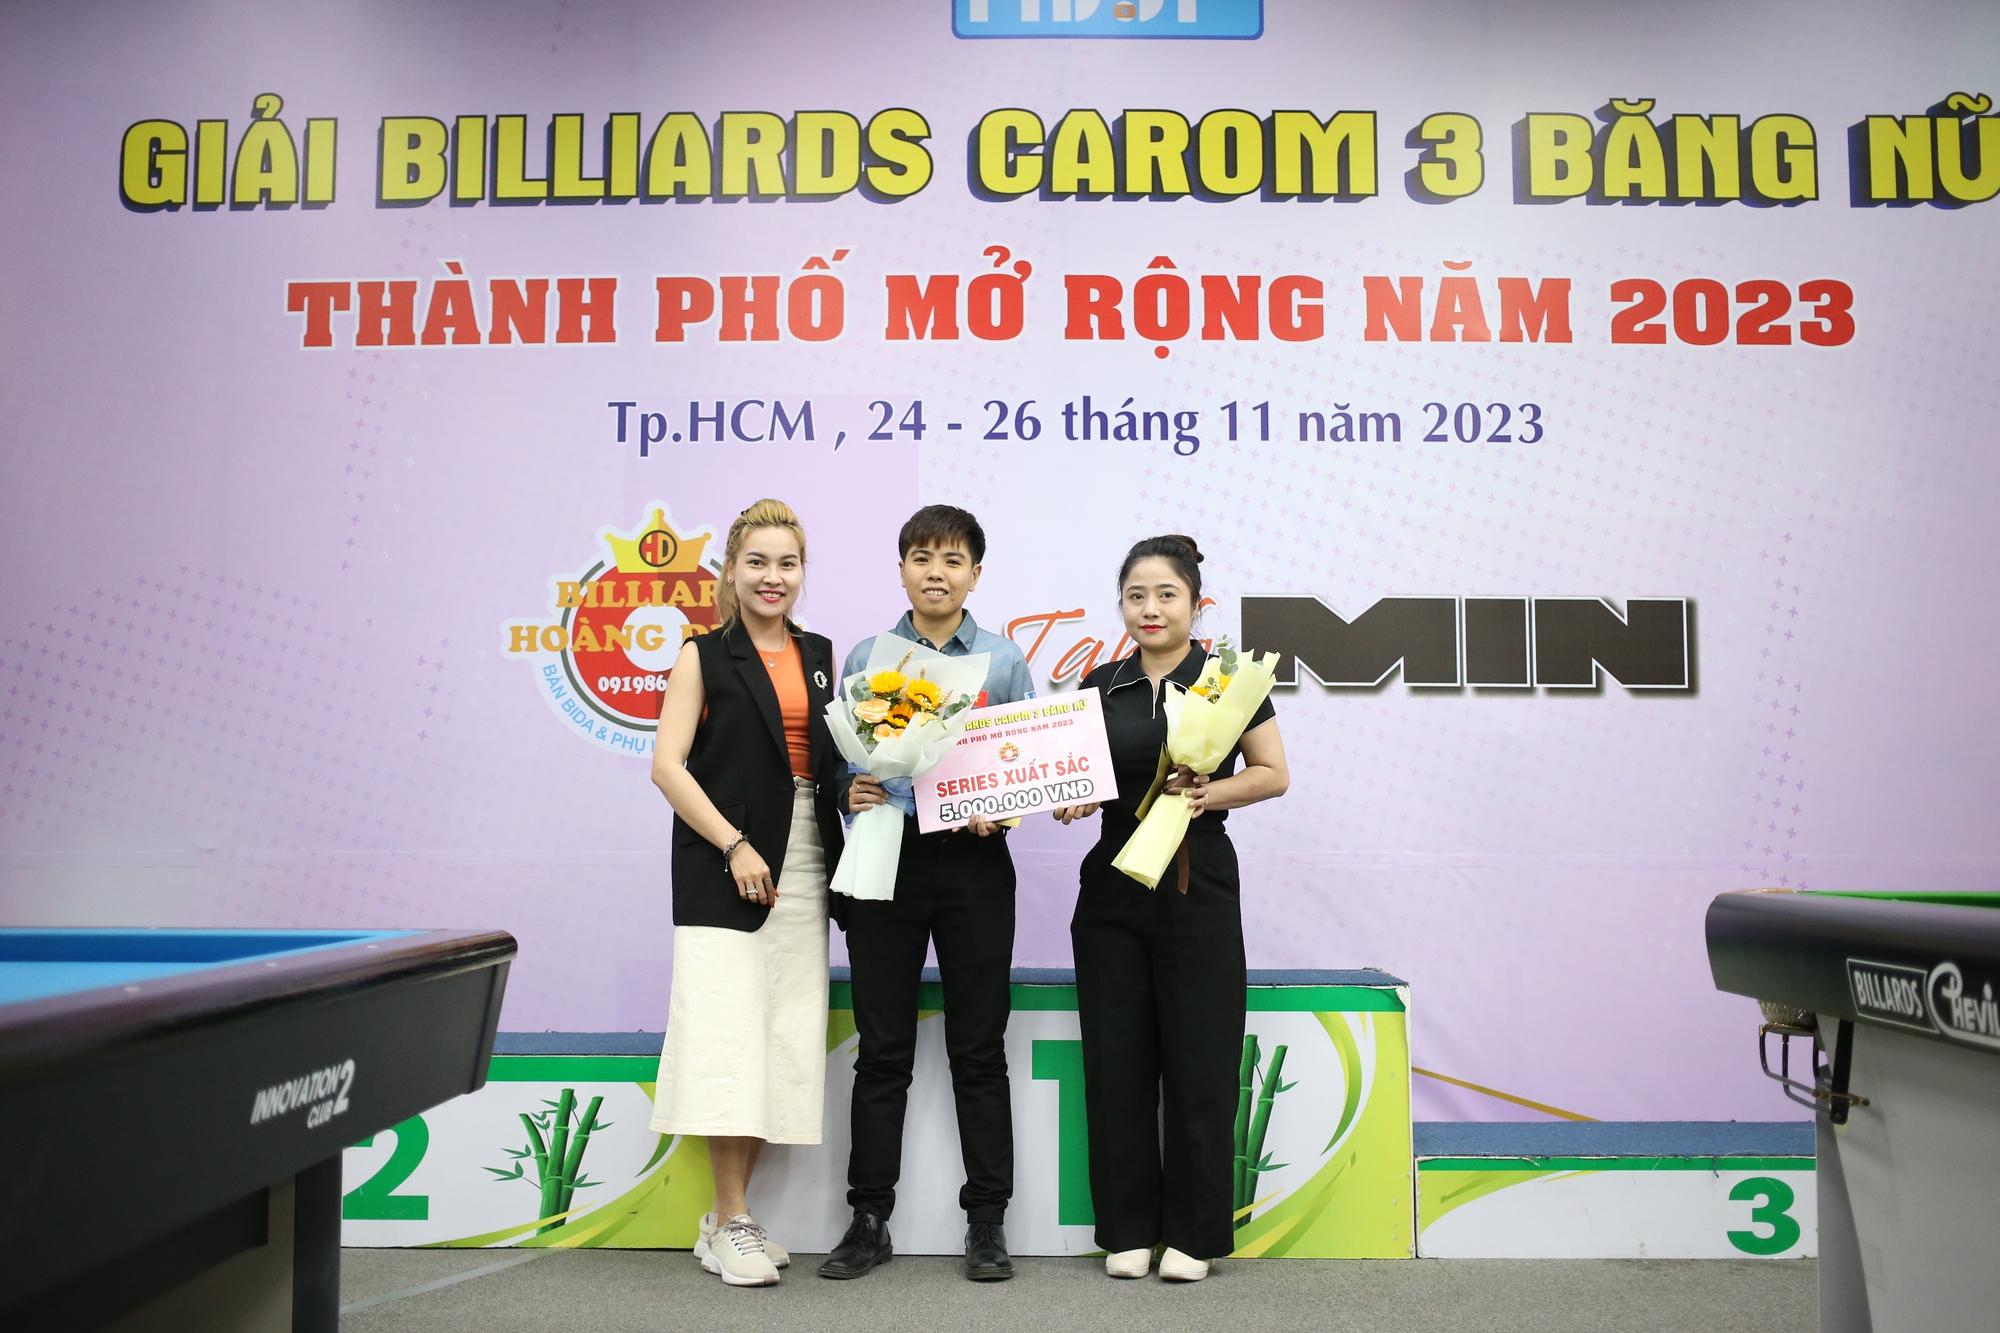 Cơ thủ Bích Trâm lên ngôi tại Giải billiards carom 3 băng nữ TP.HCM - Ảnh 2.